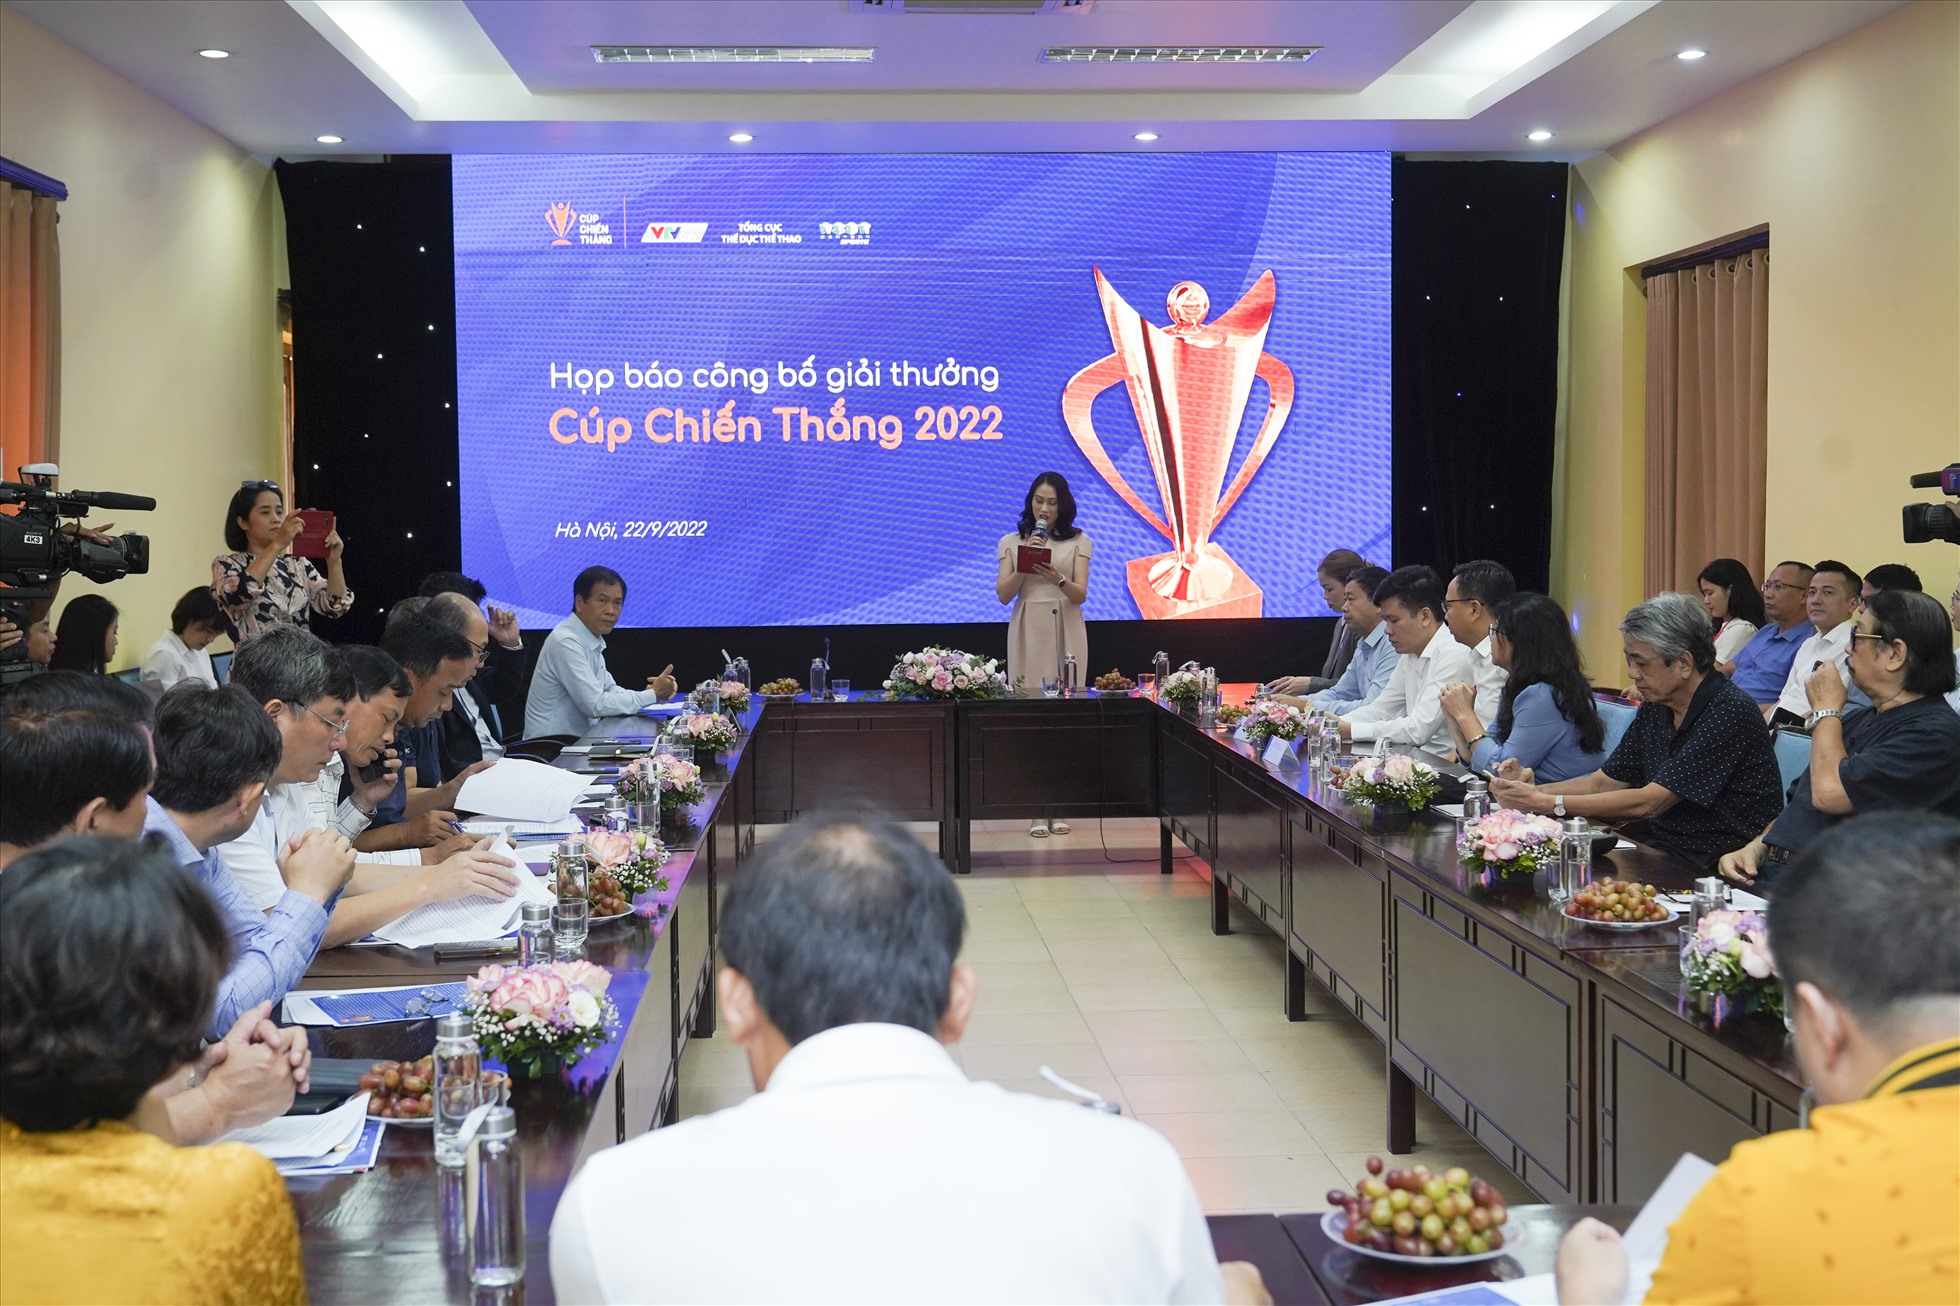 HLV Park Hang-seo, Mai Đức Chung được đề cử Cúp chiến thắng 2022-1